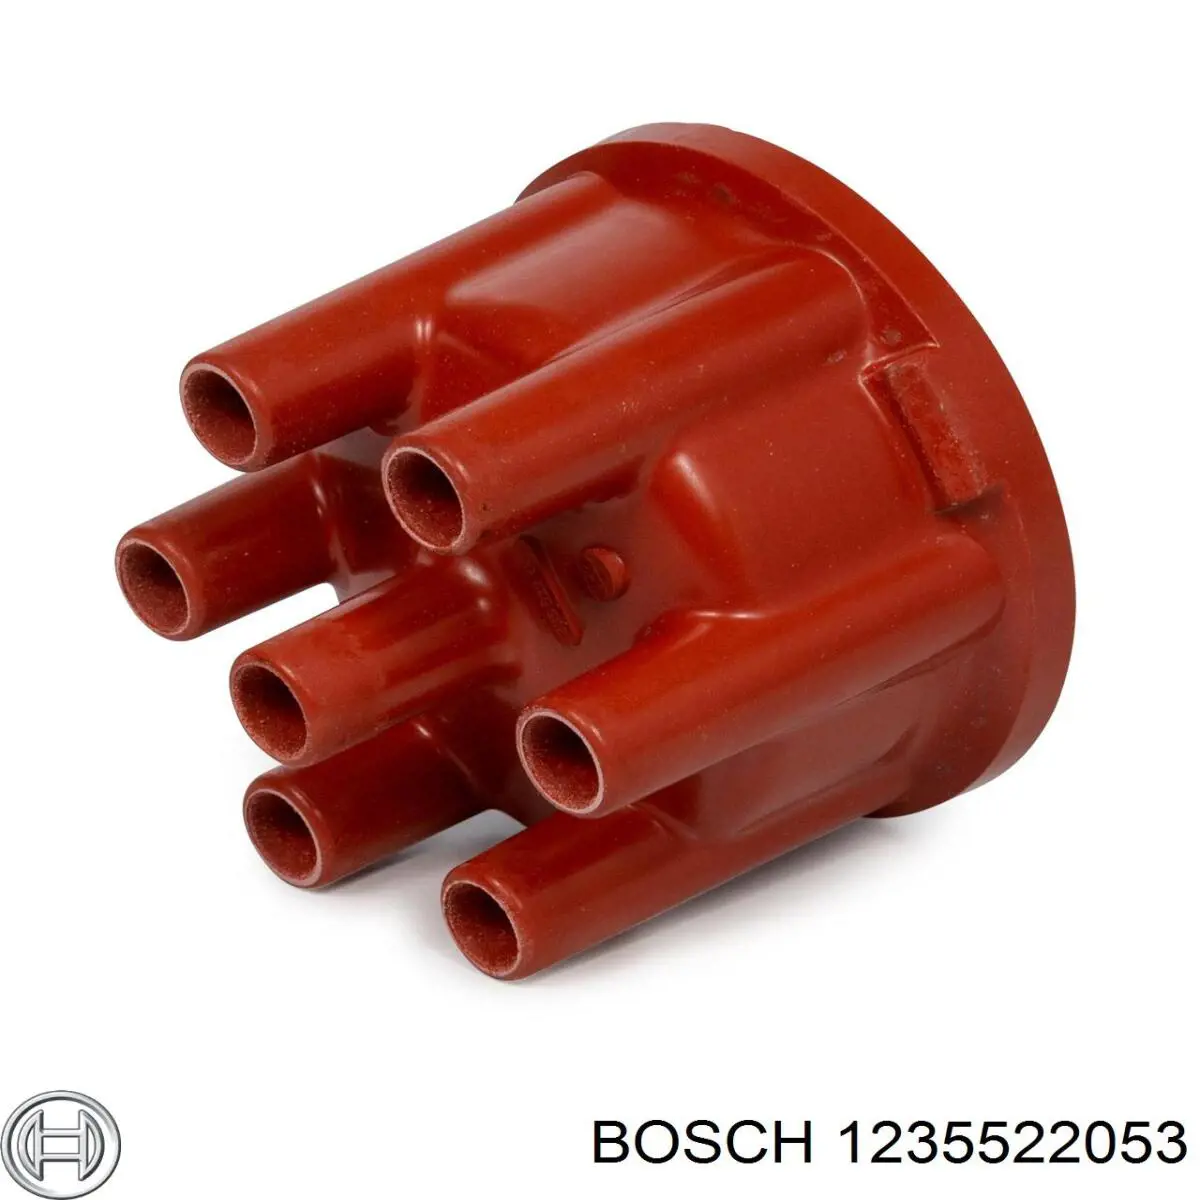 1235522053 Bosch крышка распределителя зажигания (трамблера)